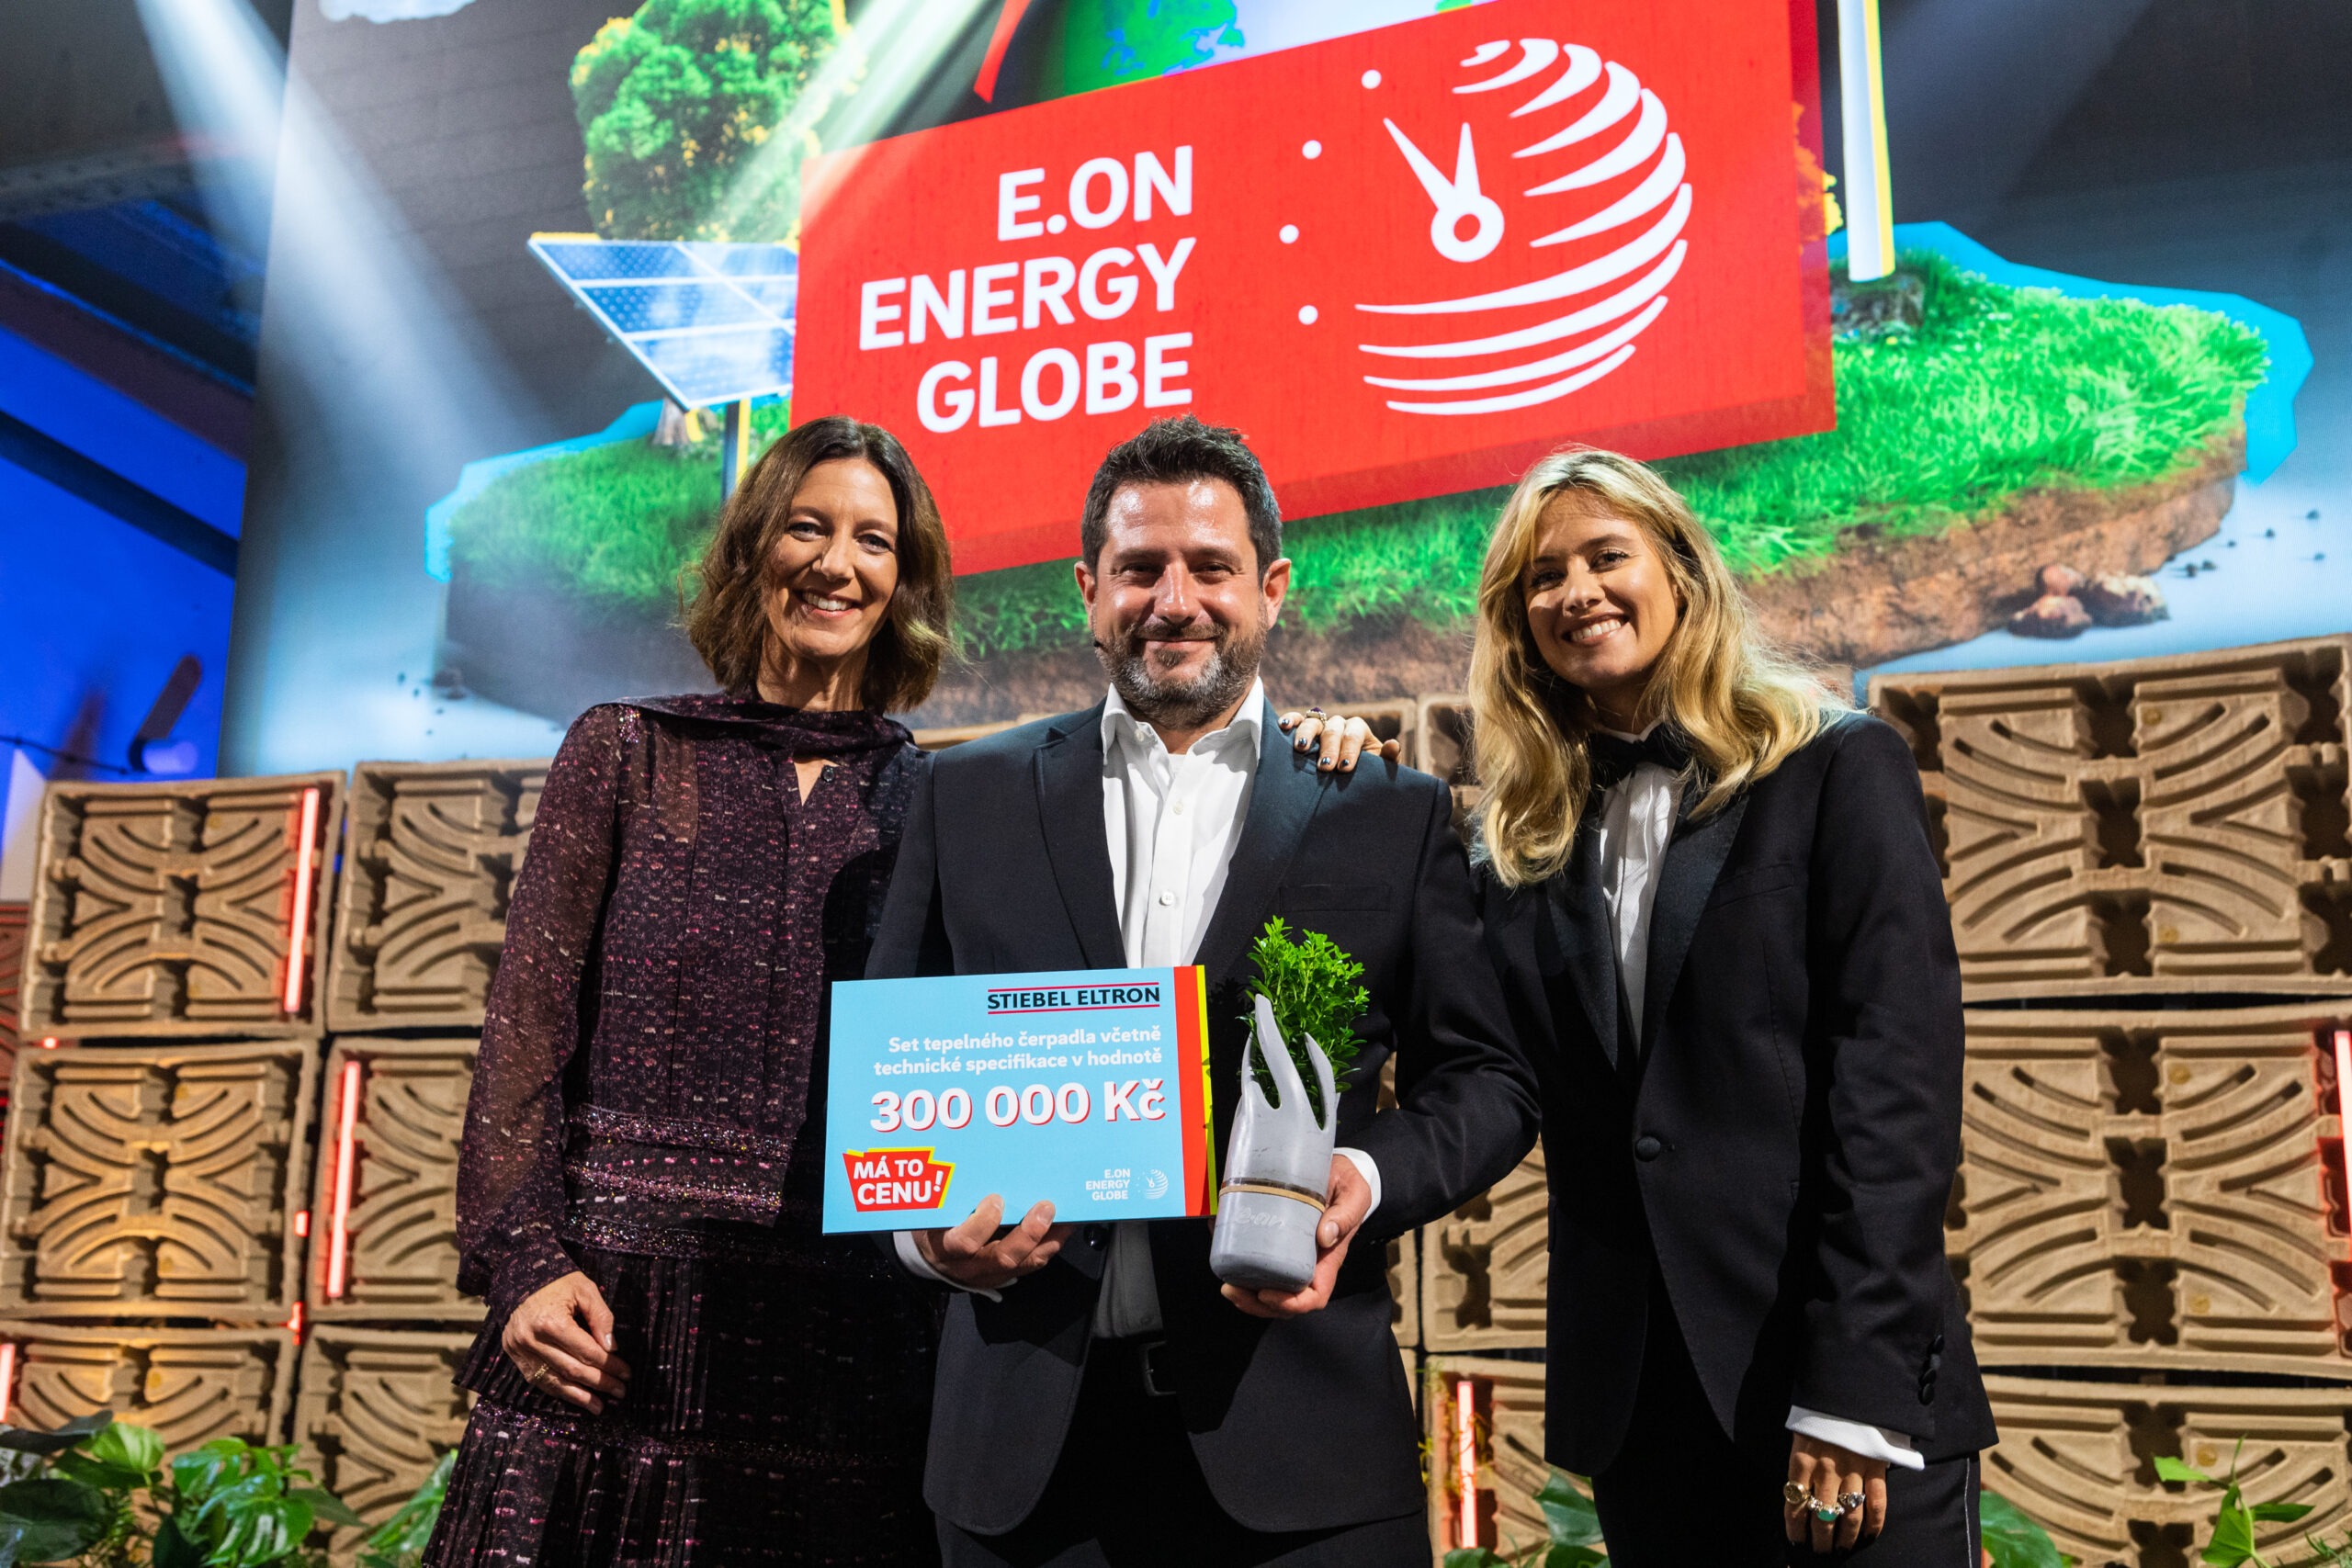 Soutěž E.ON Energy Globe, prestižní tuzemské ocenění v oblasti ekologie a udržitelnosti, zná vítěze letošního 14. ročníku